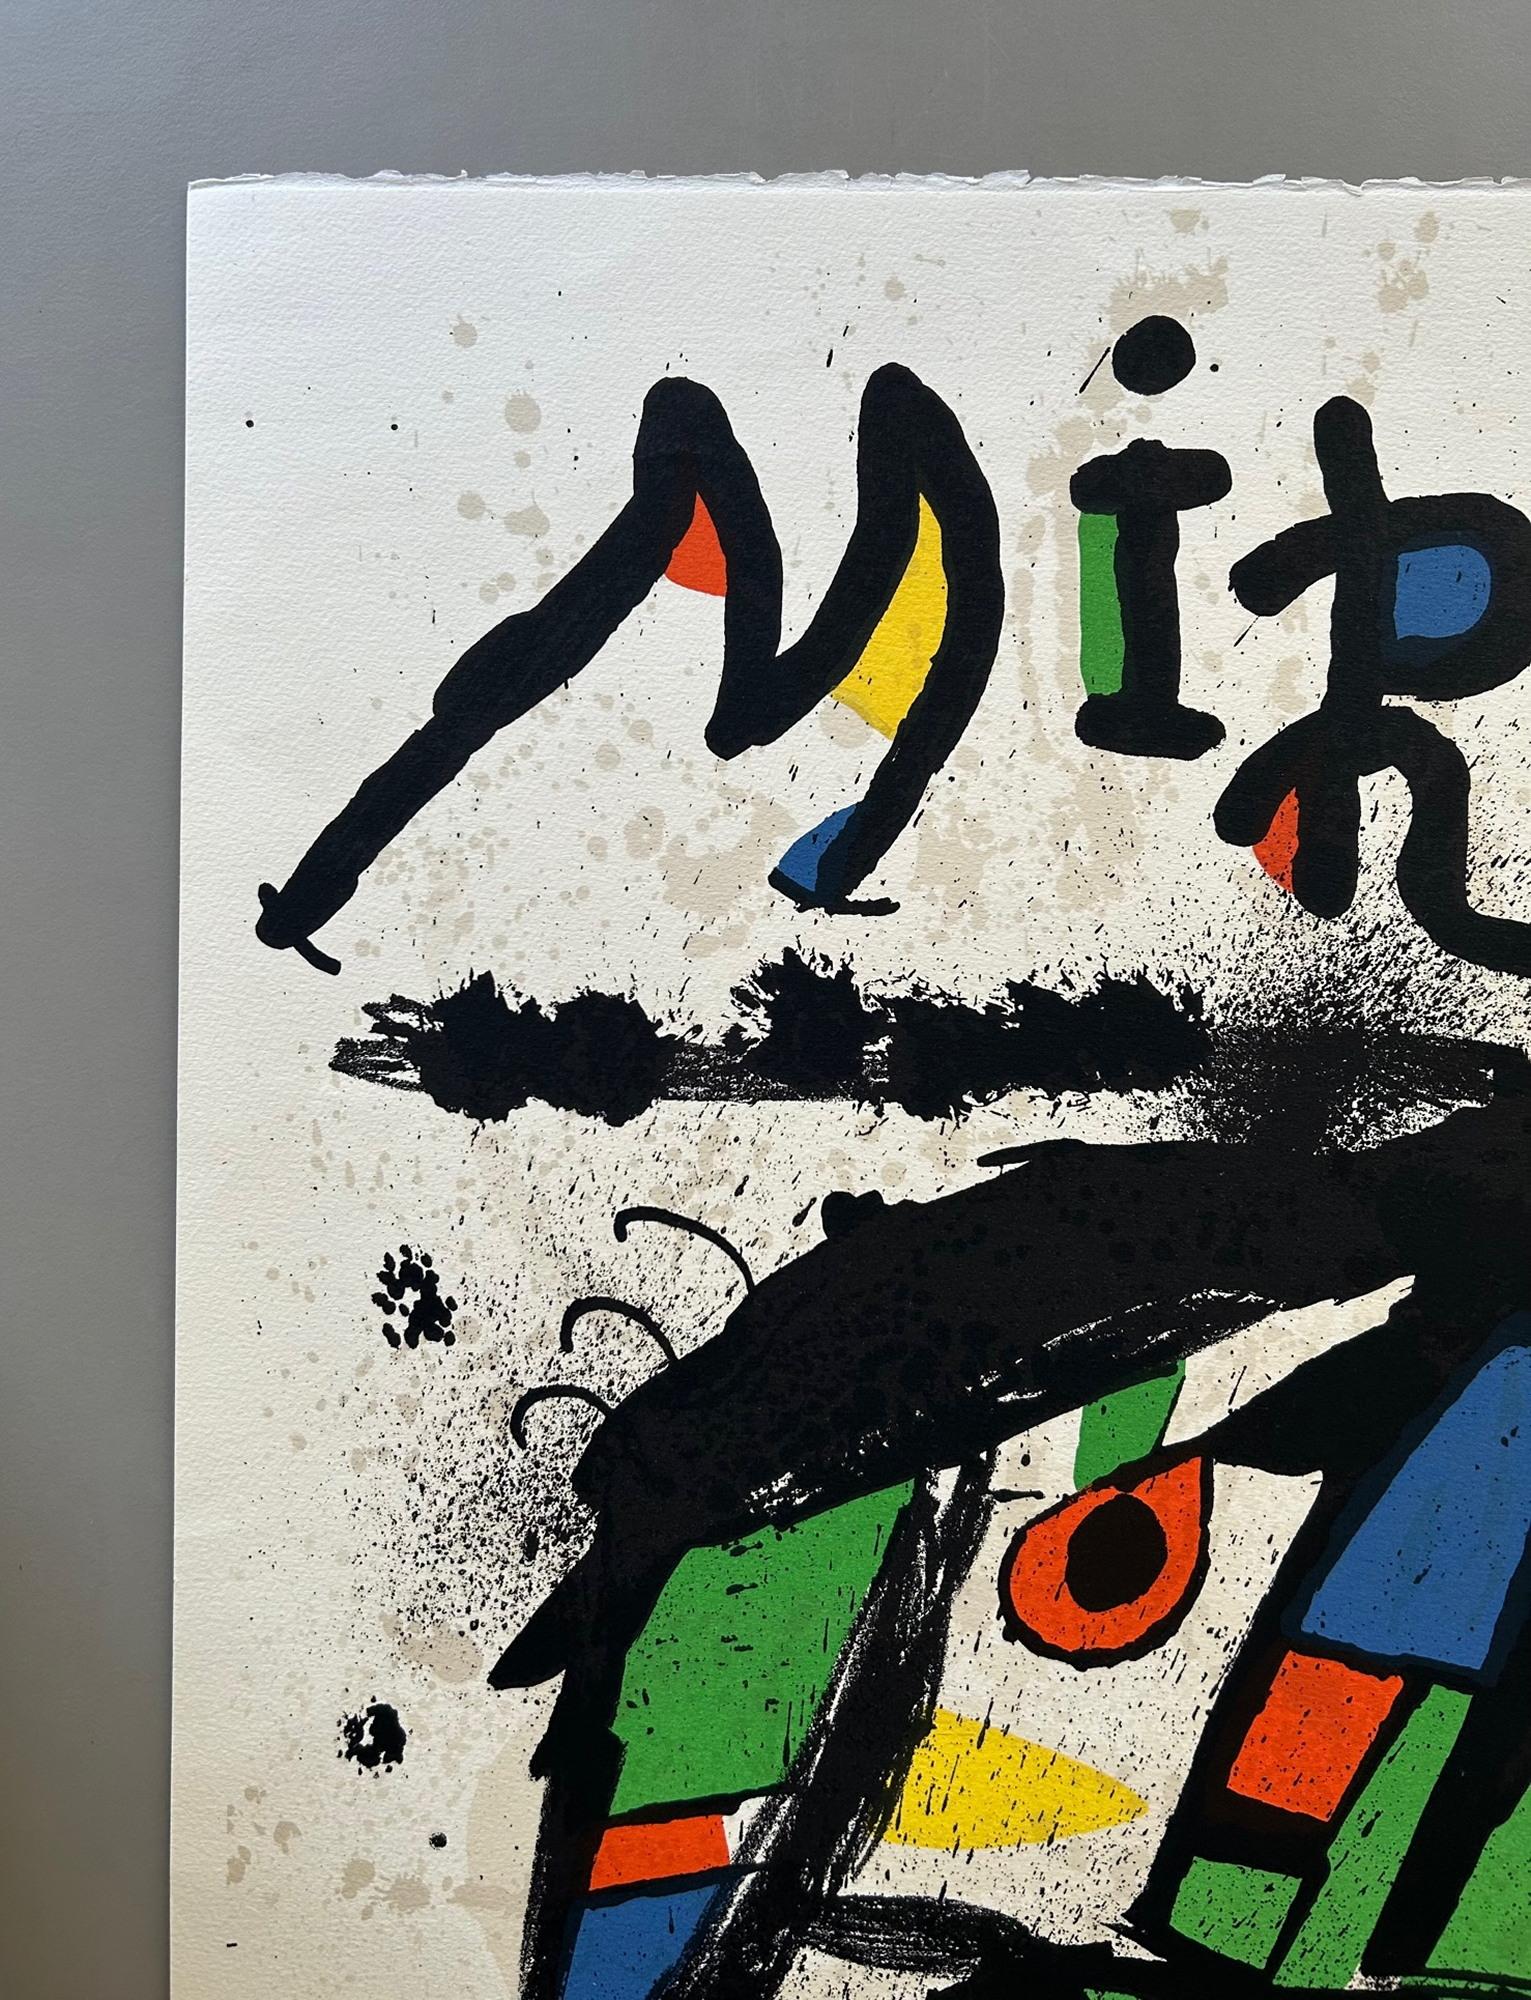 Affiche pour l'exposition Joan Miro à la Galerie Maeght

Lithographie imprimée en couleurs pour une exposition de l'œuvre de Miro à Paris de novembre 1978 à janvier 1979 signée au crayon d'un tirage de 75 exemplaires.

Celui-ci est numéroté 37/75